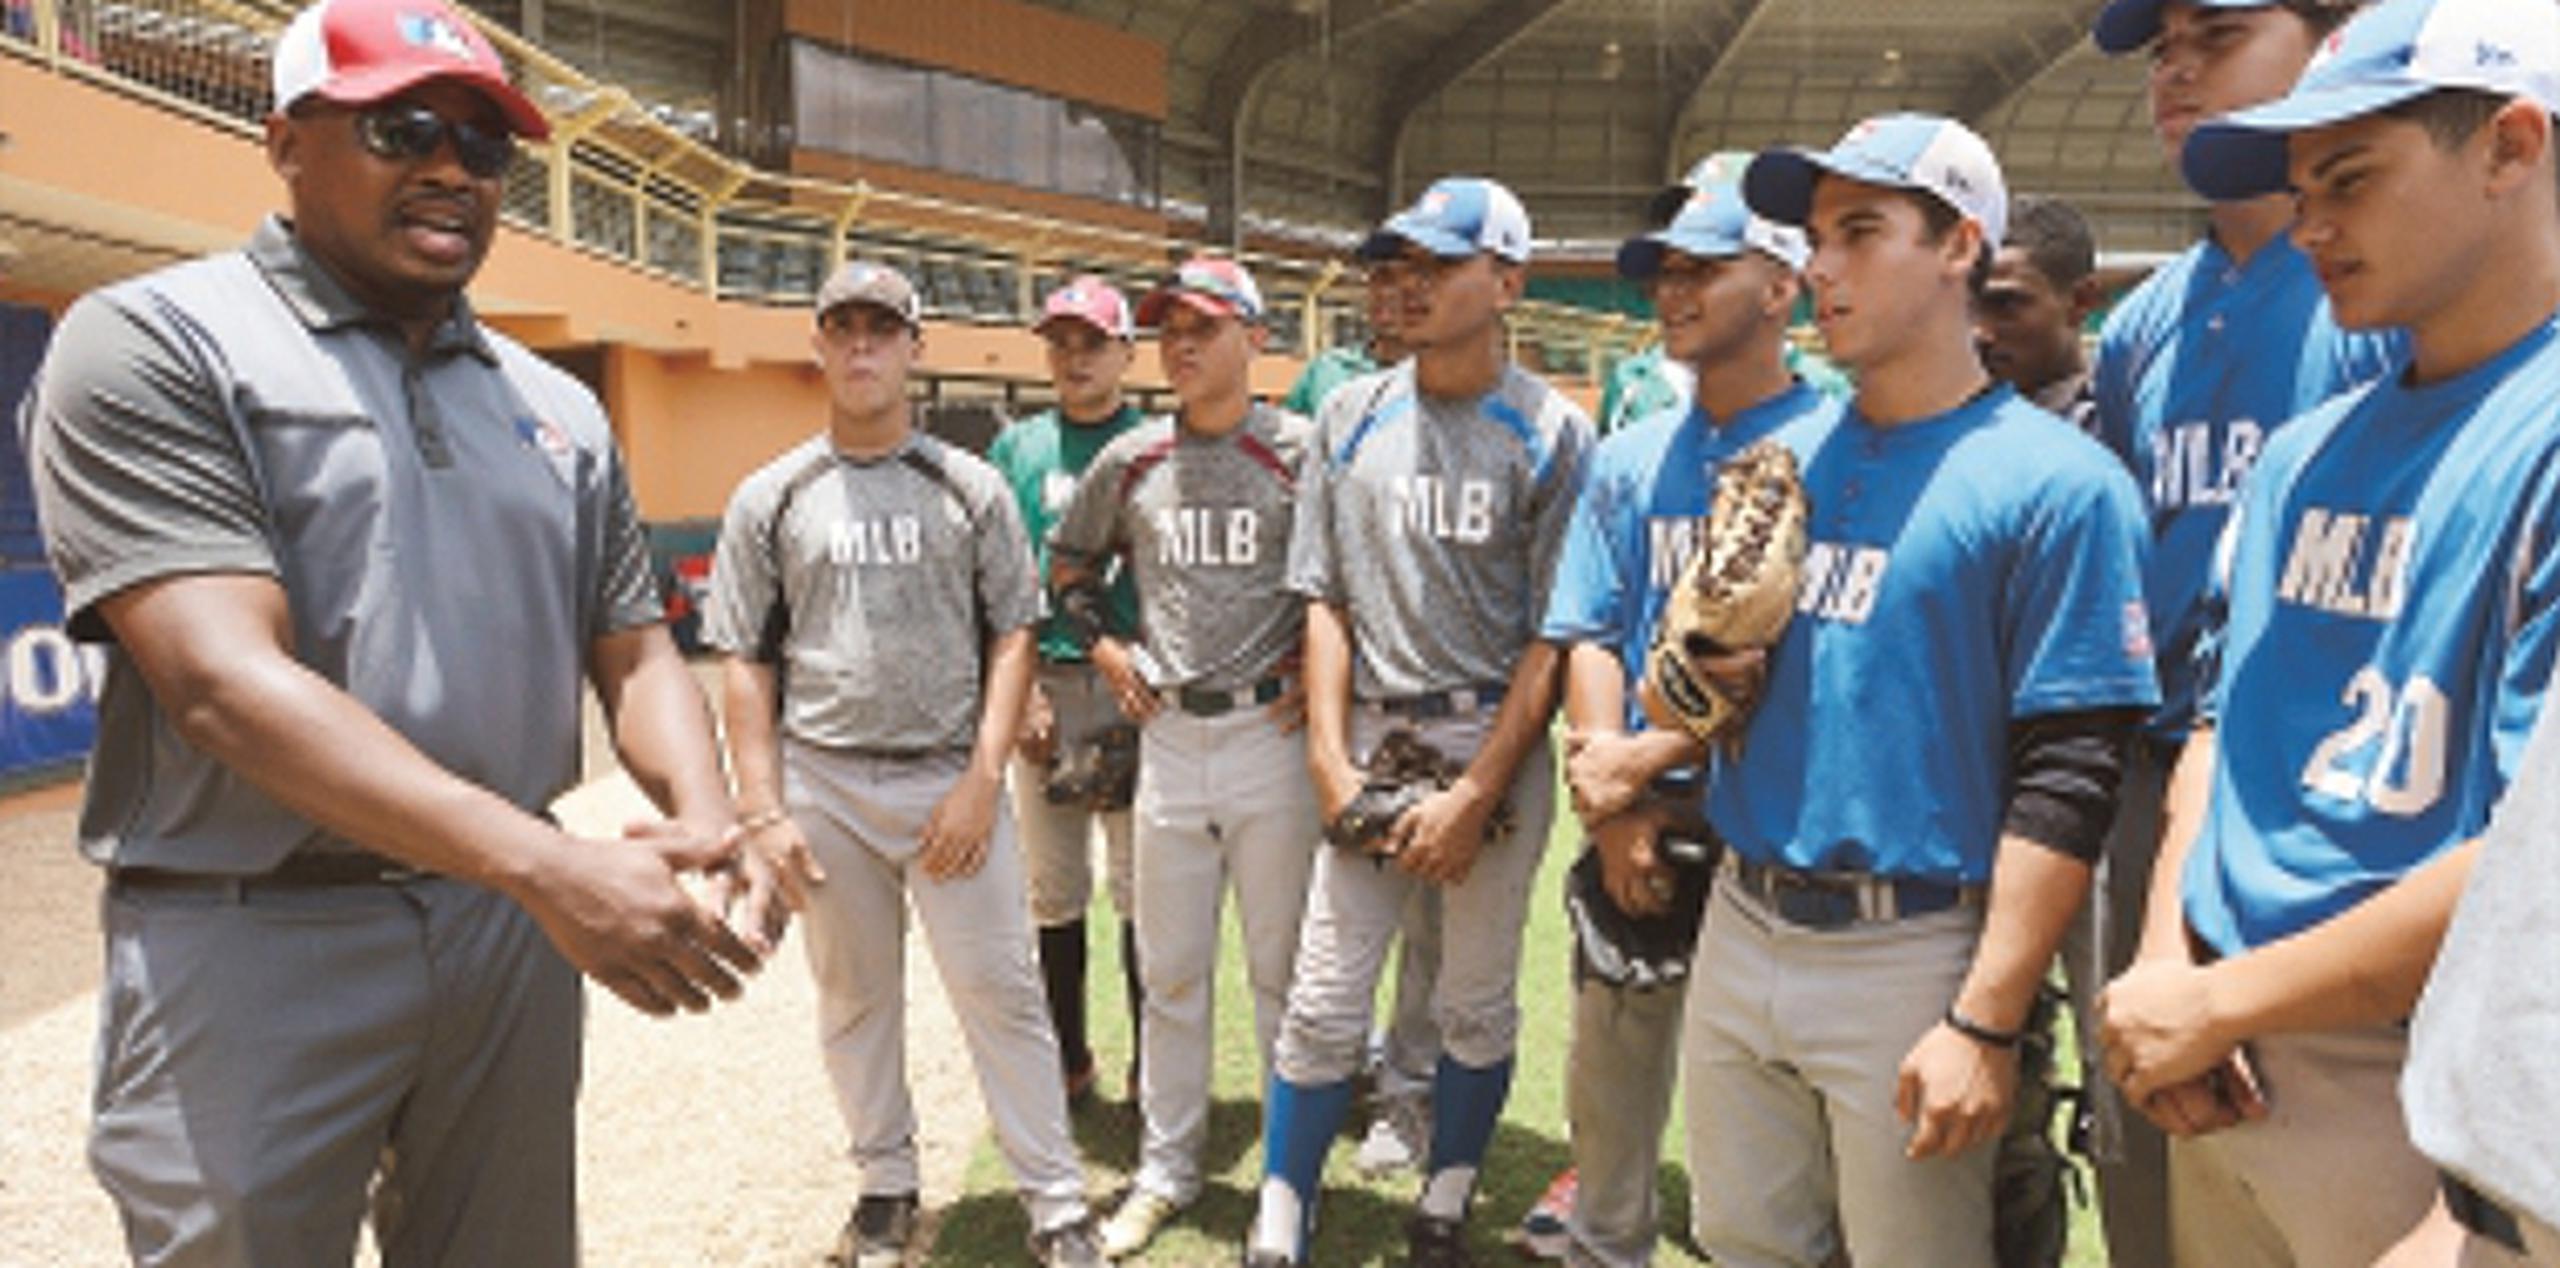 Las próximas pruebas  para ingresar al programa de las Grandes Ligas se  se realizarán a mediados de agosto en Mayagüez, Salinas, Yauco y Guaynabo. (ana,abruna@gfrmedia.com)